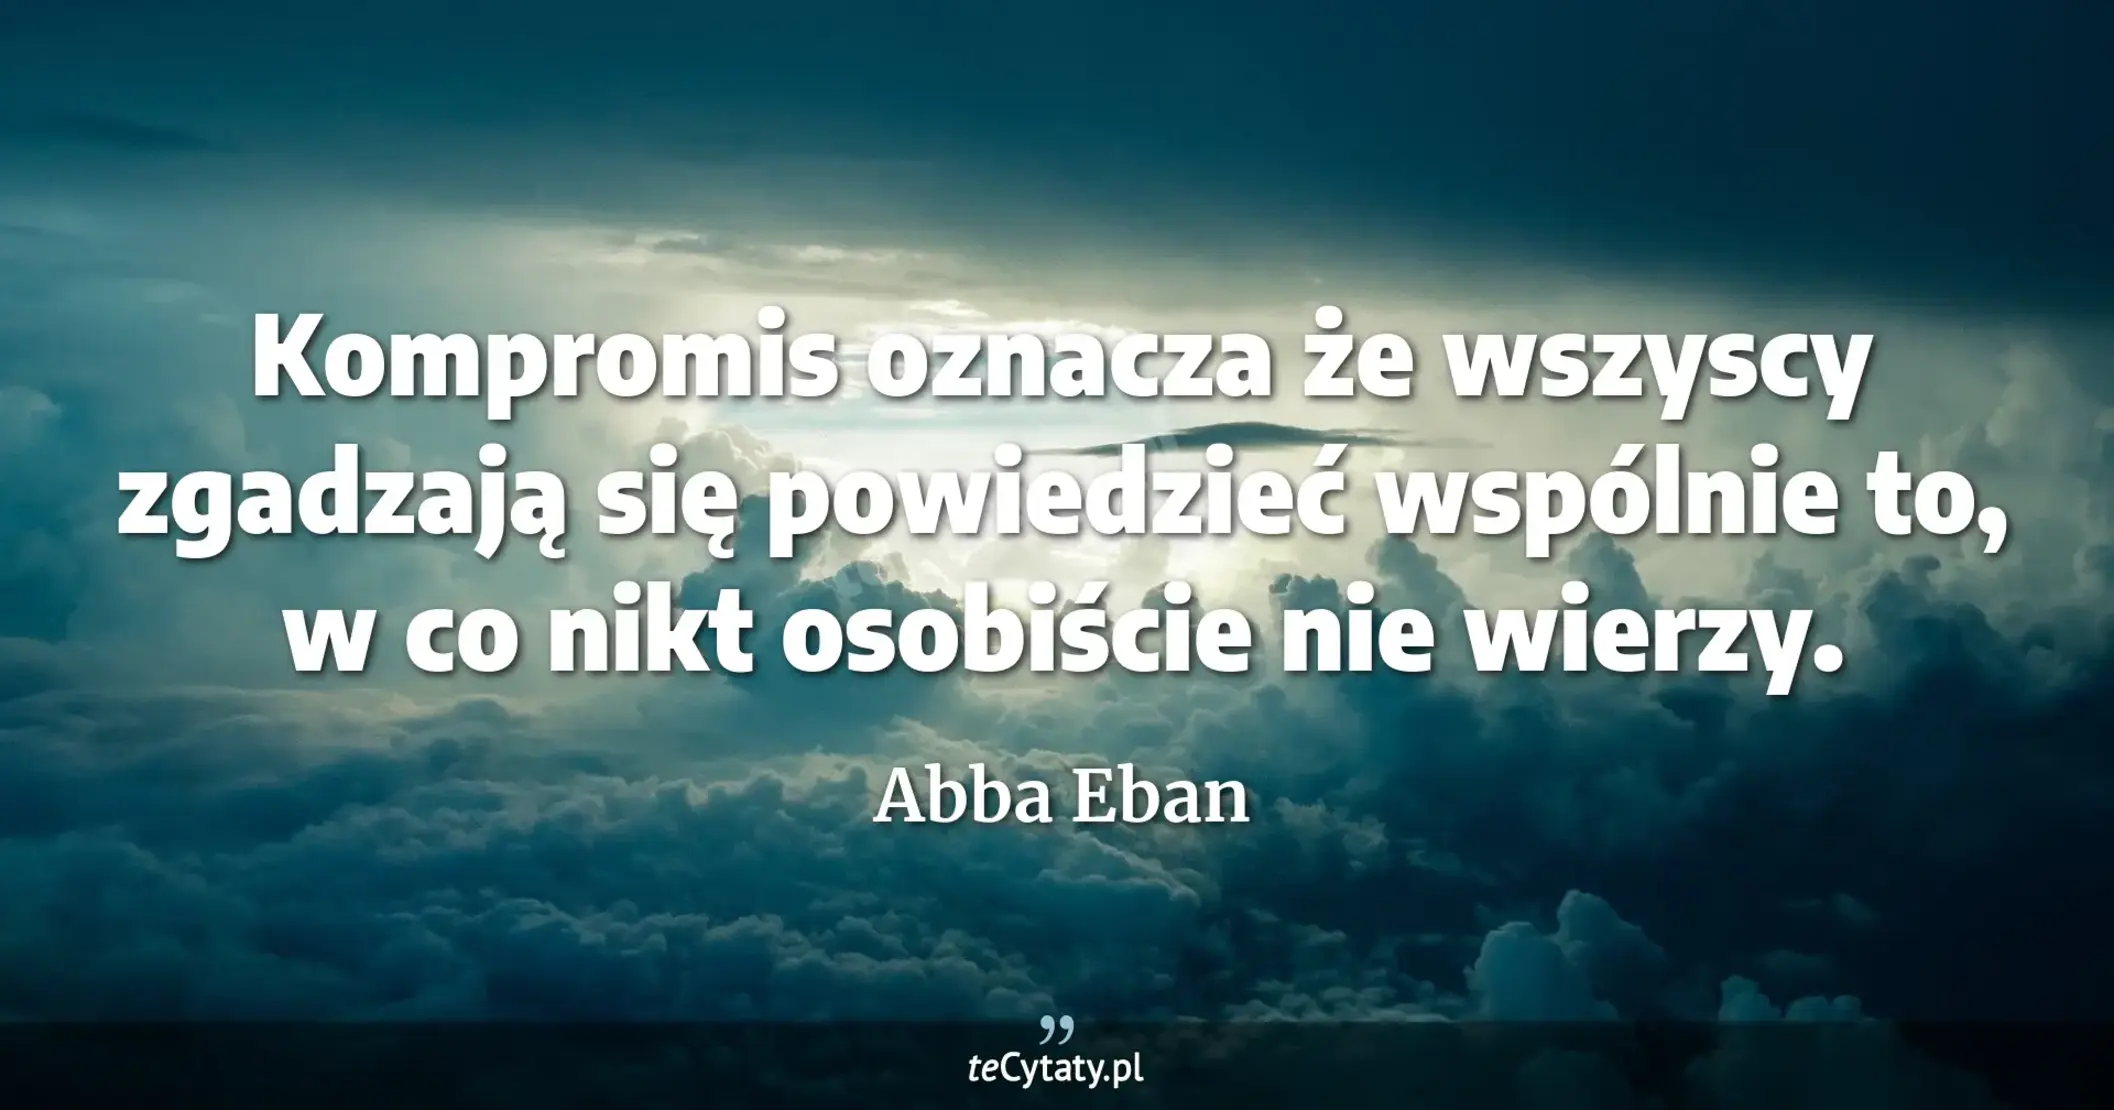 Kompromis oznacza że wszyscy zgadzają się powiedzieć wspólnie to, w co nikt osobiście nie wierzy. - Abba Eban